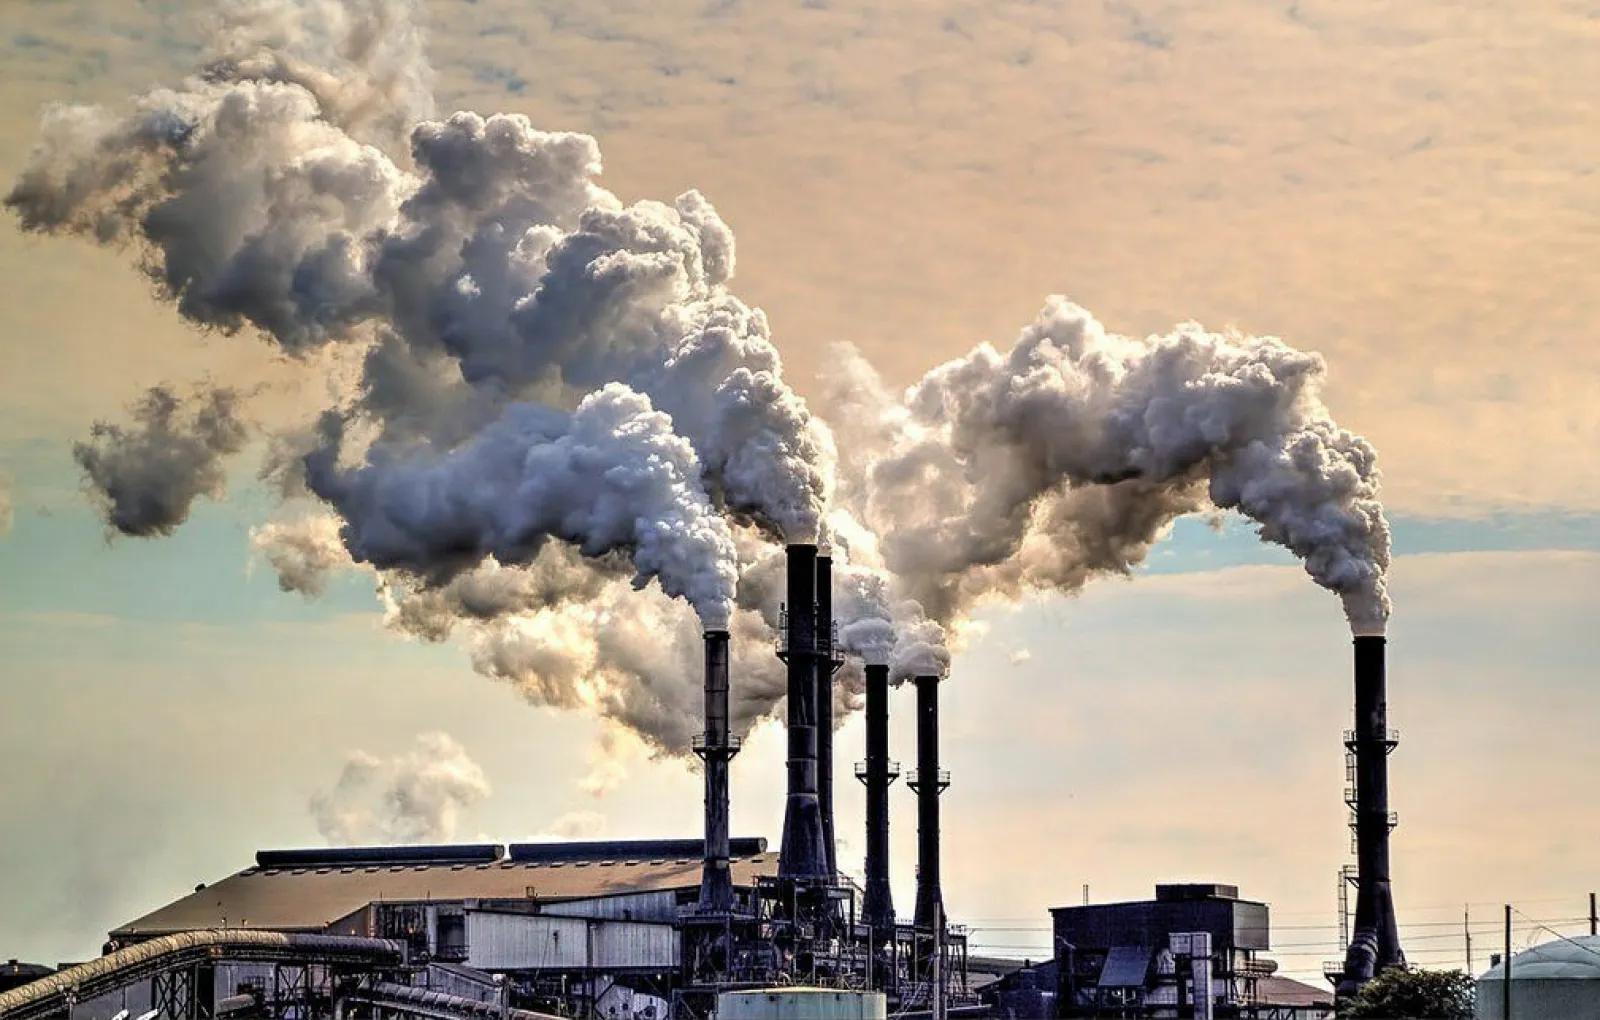 Выброс токсичных веществ. Загрязнение атмосферы (промышленные отходы)* Индии. Заводы загрязняют воздух. Выбросы промышленных предприятий. Загрязнение окружающий среды.